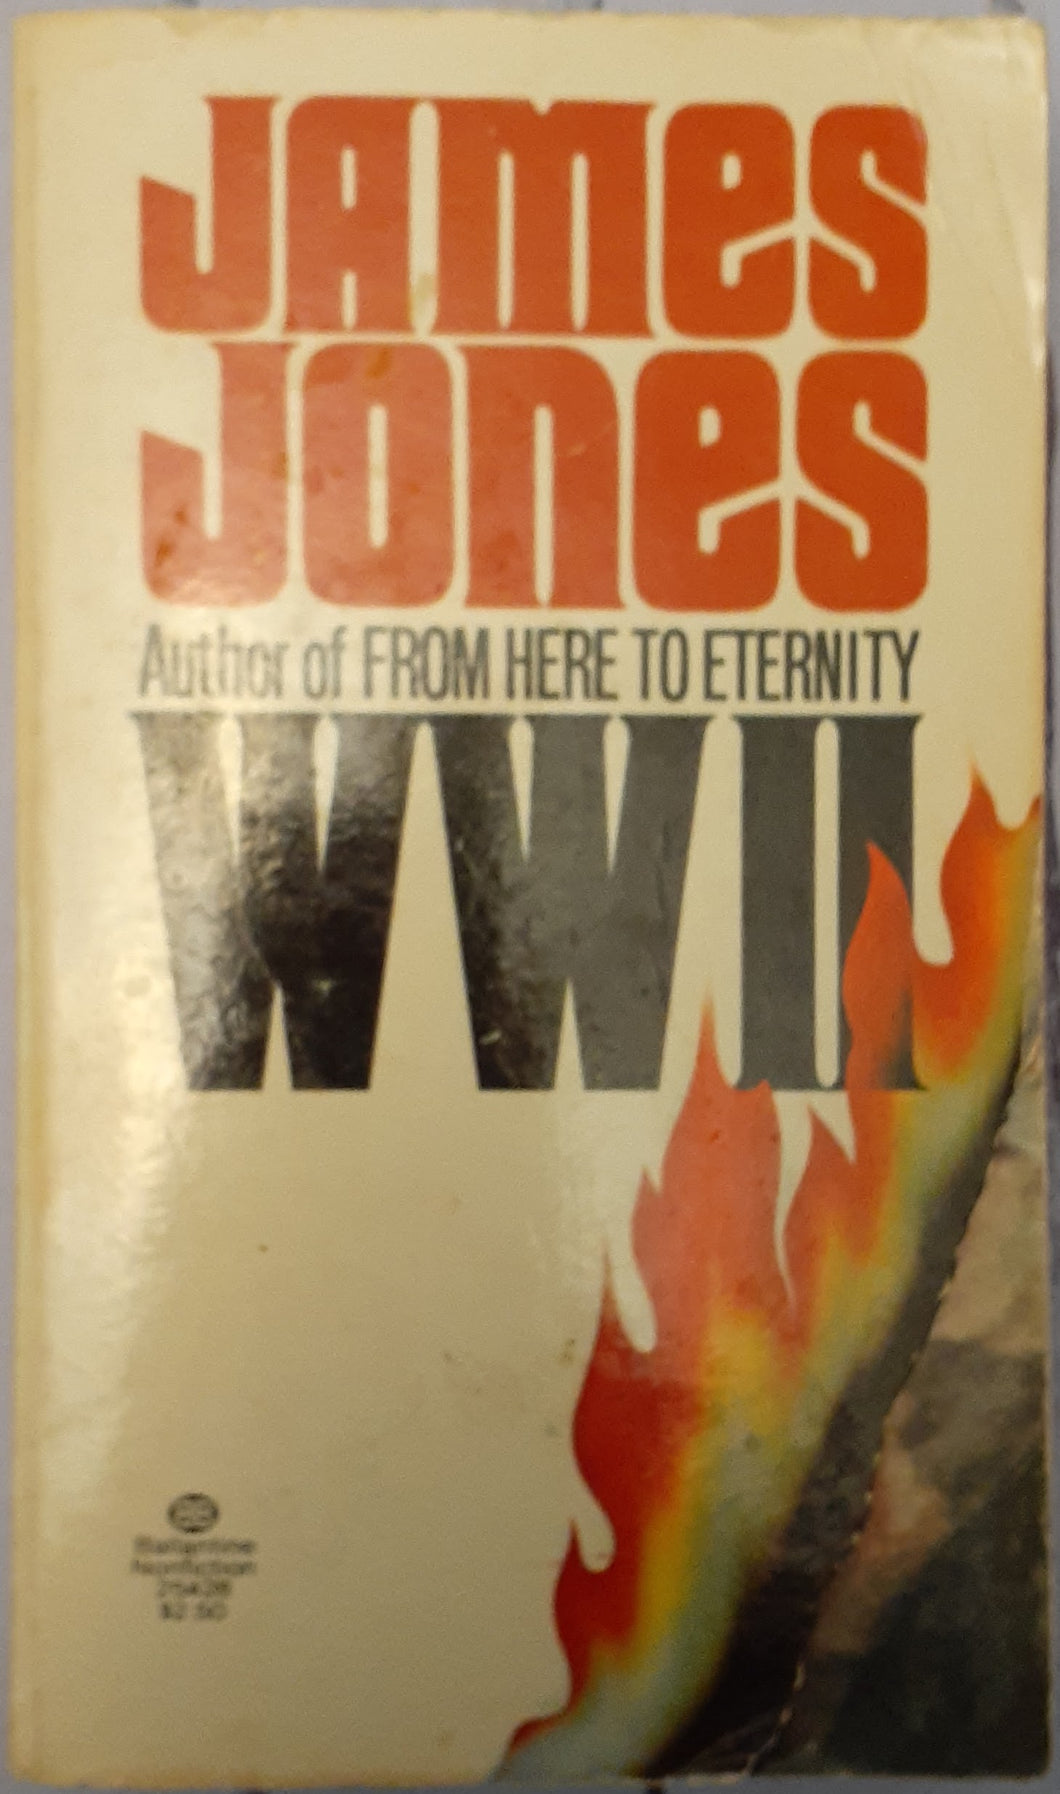 WWII - James Jones